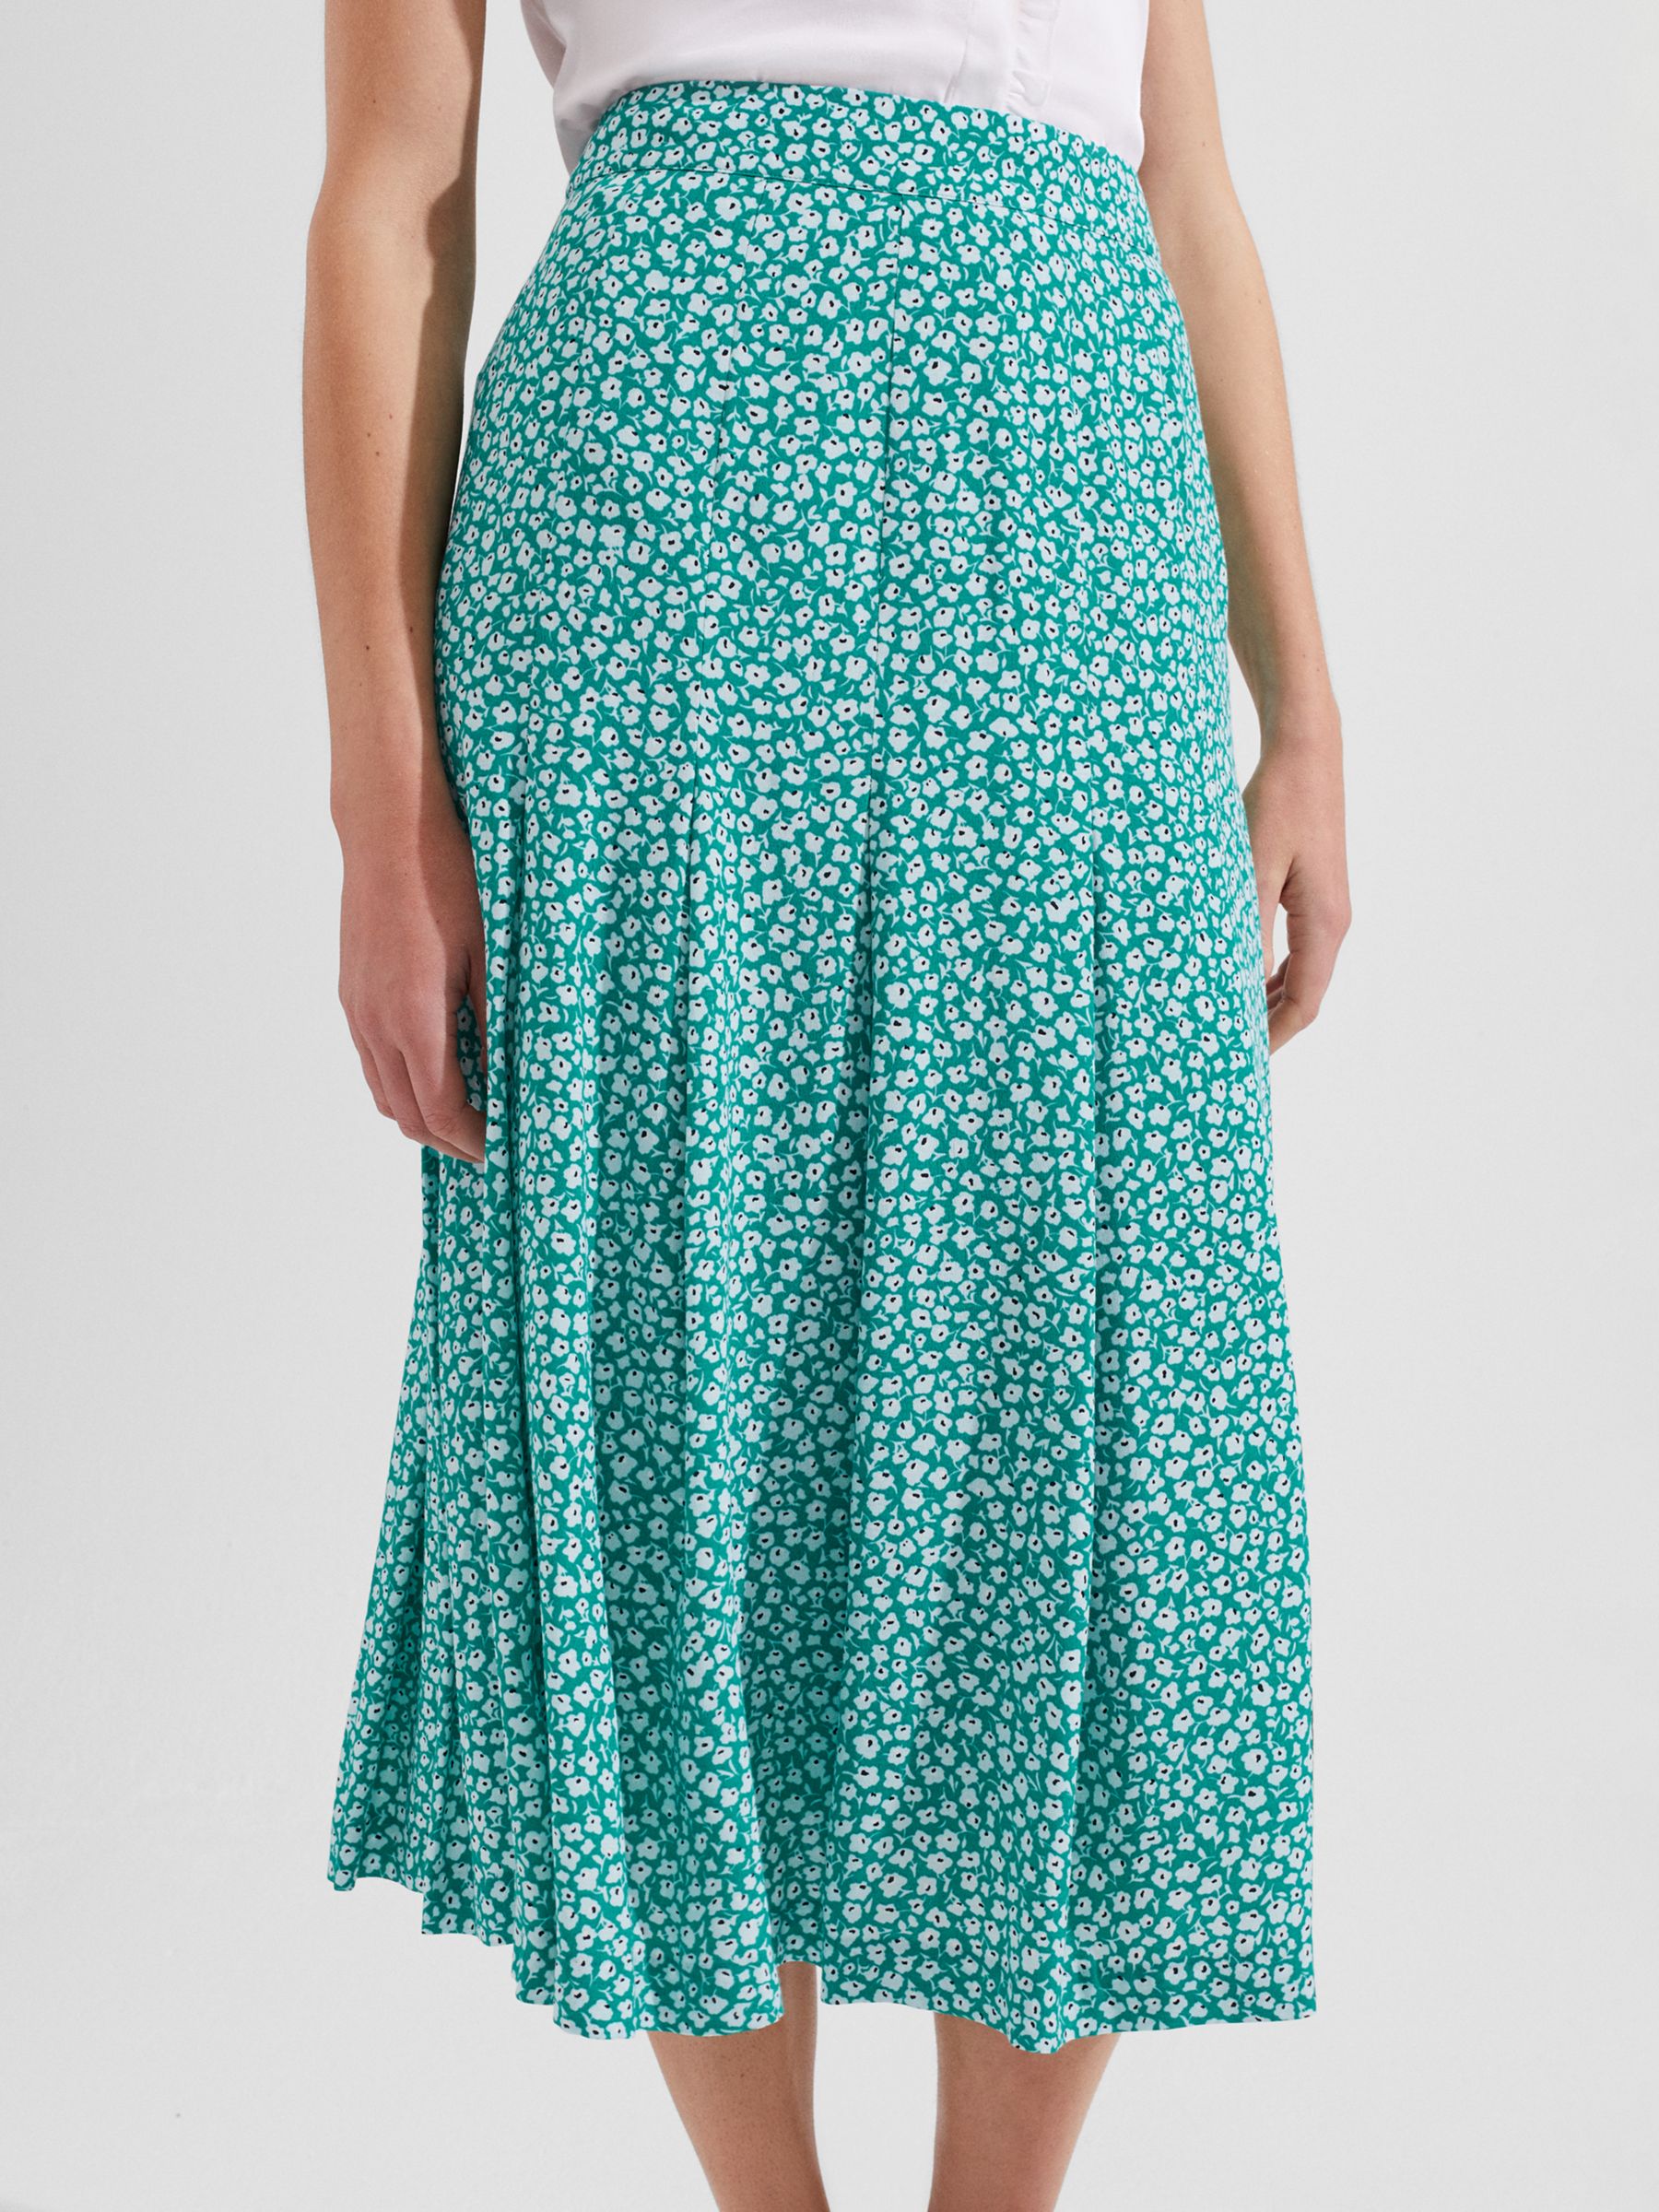 Hobbs Dianne Midi Skirt, Green at John Lewis & Partners